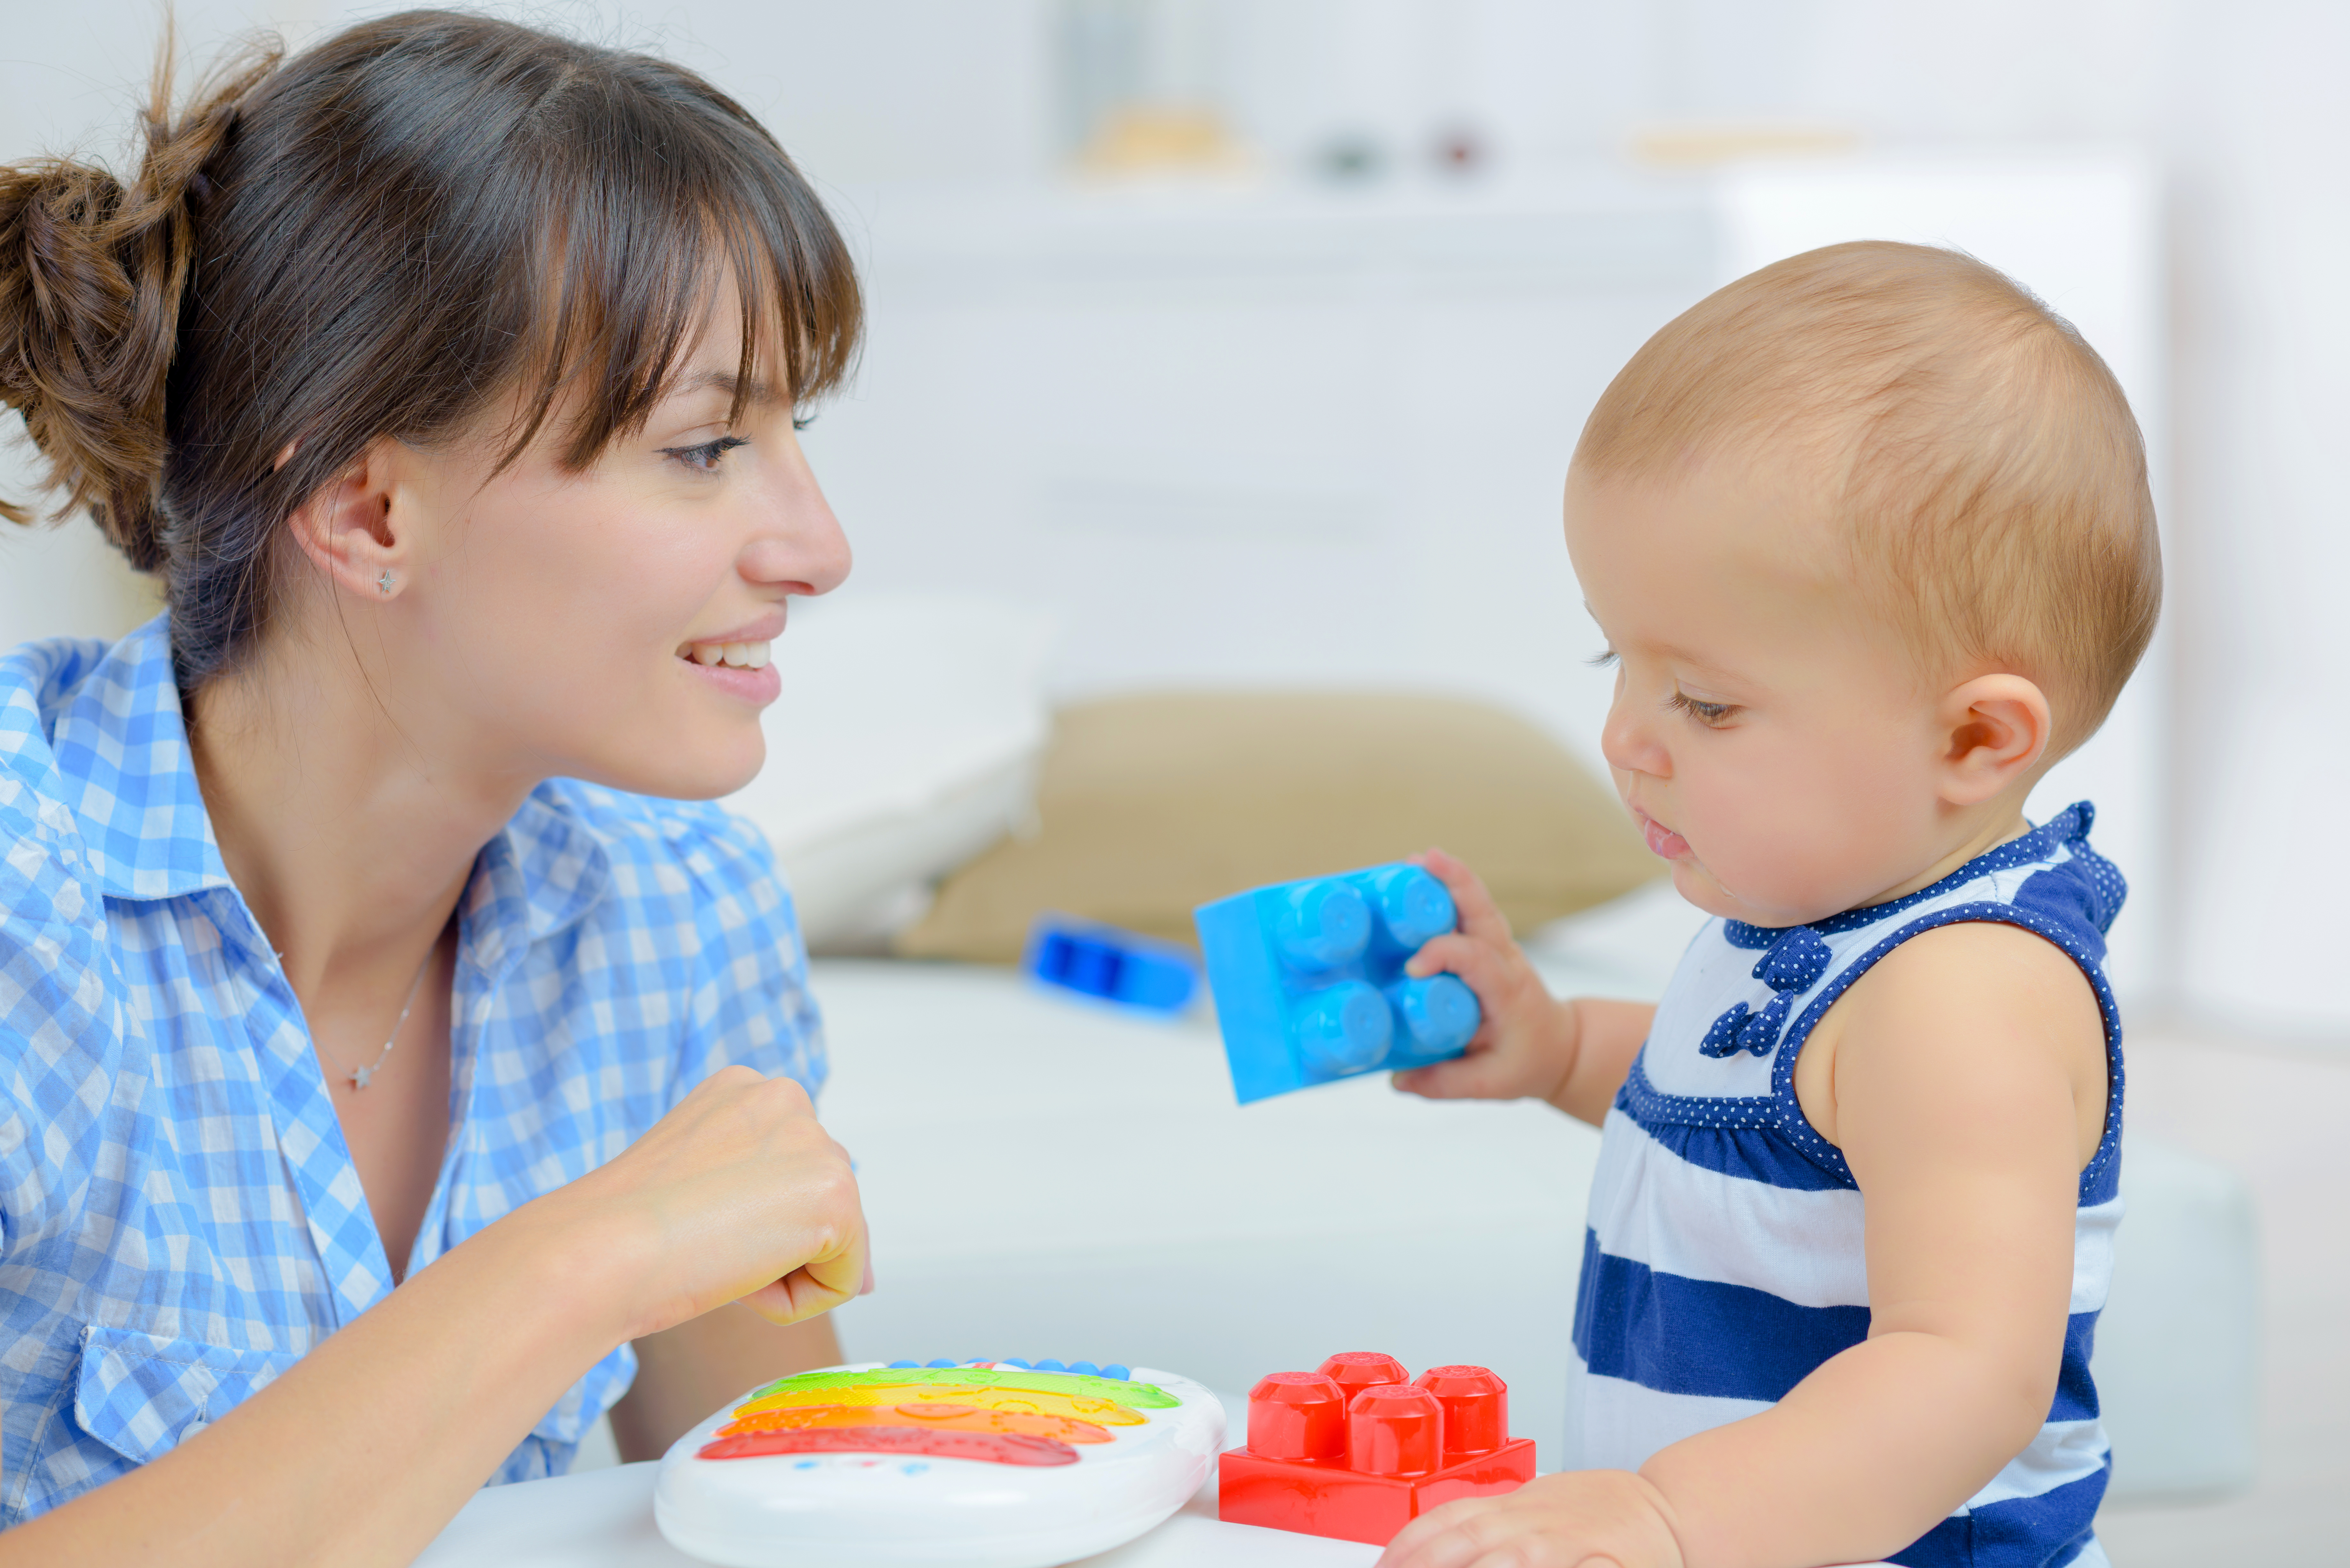 Les mères dépressives mettent plus de temps à répondre à leur enfant (Visuel Adobe Stock 216431491)